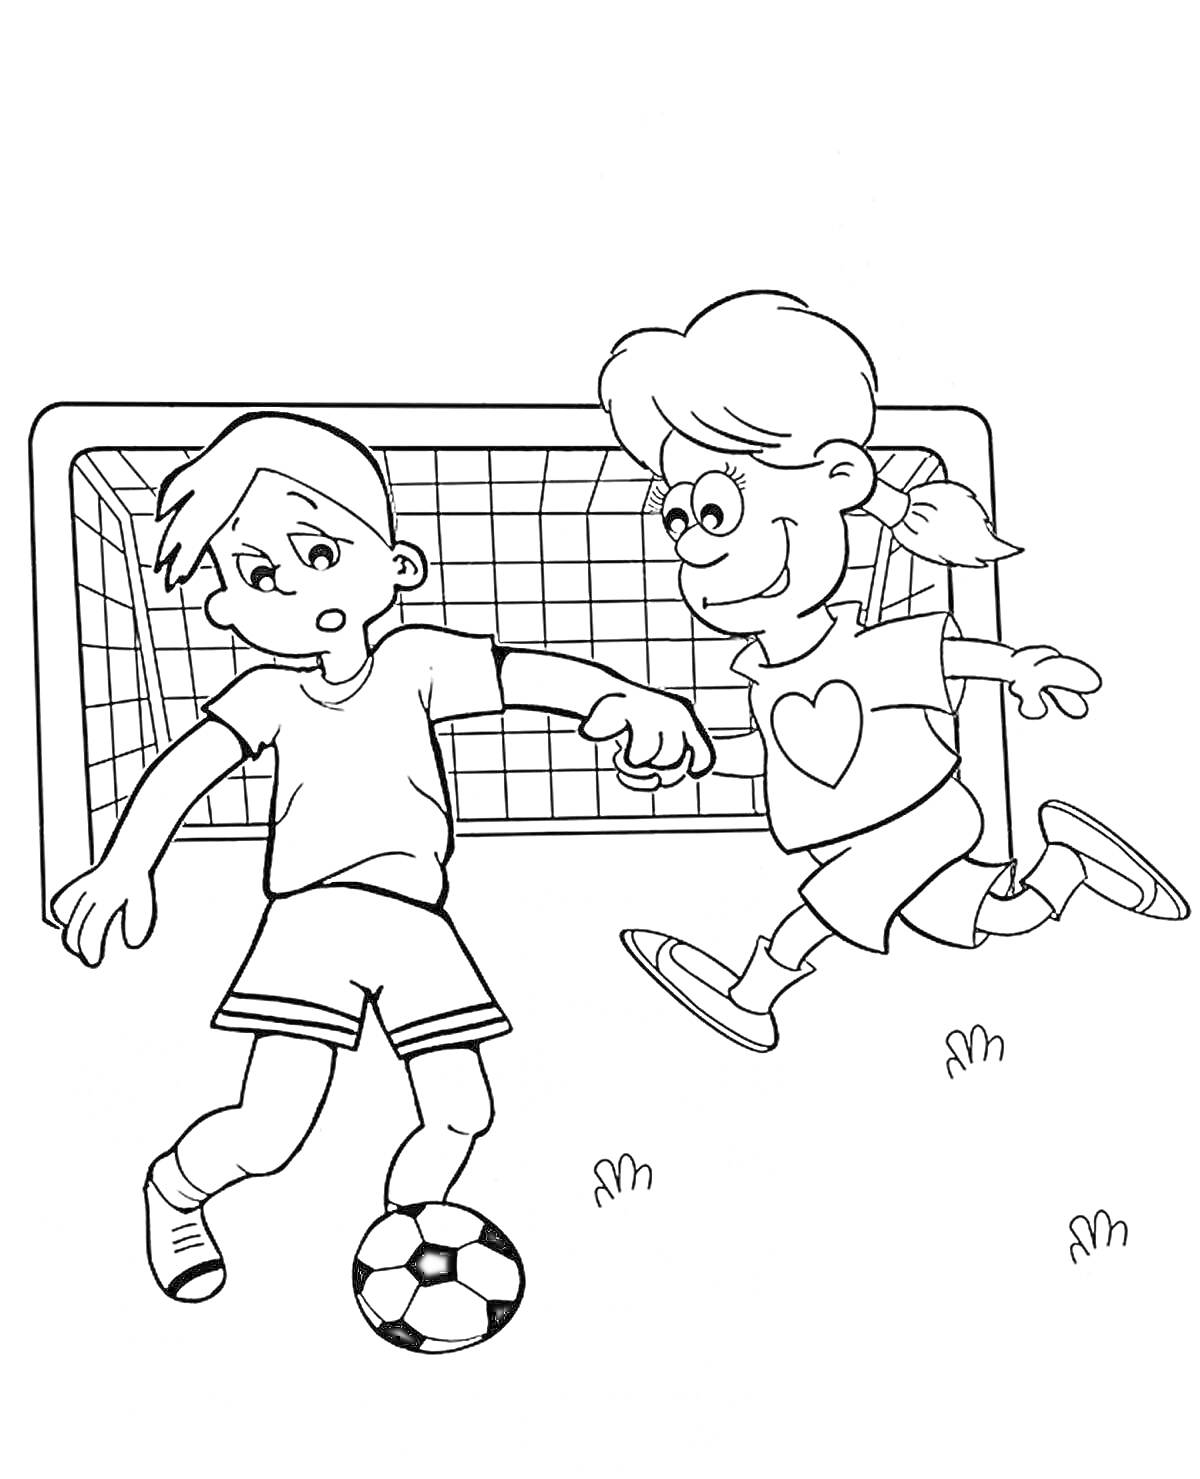 Дети играют в футбол перед воротами